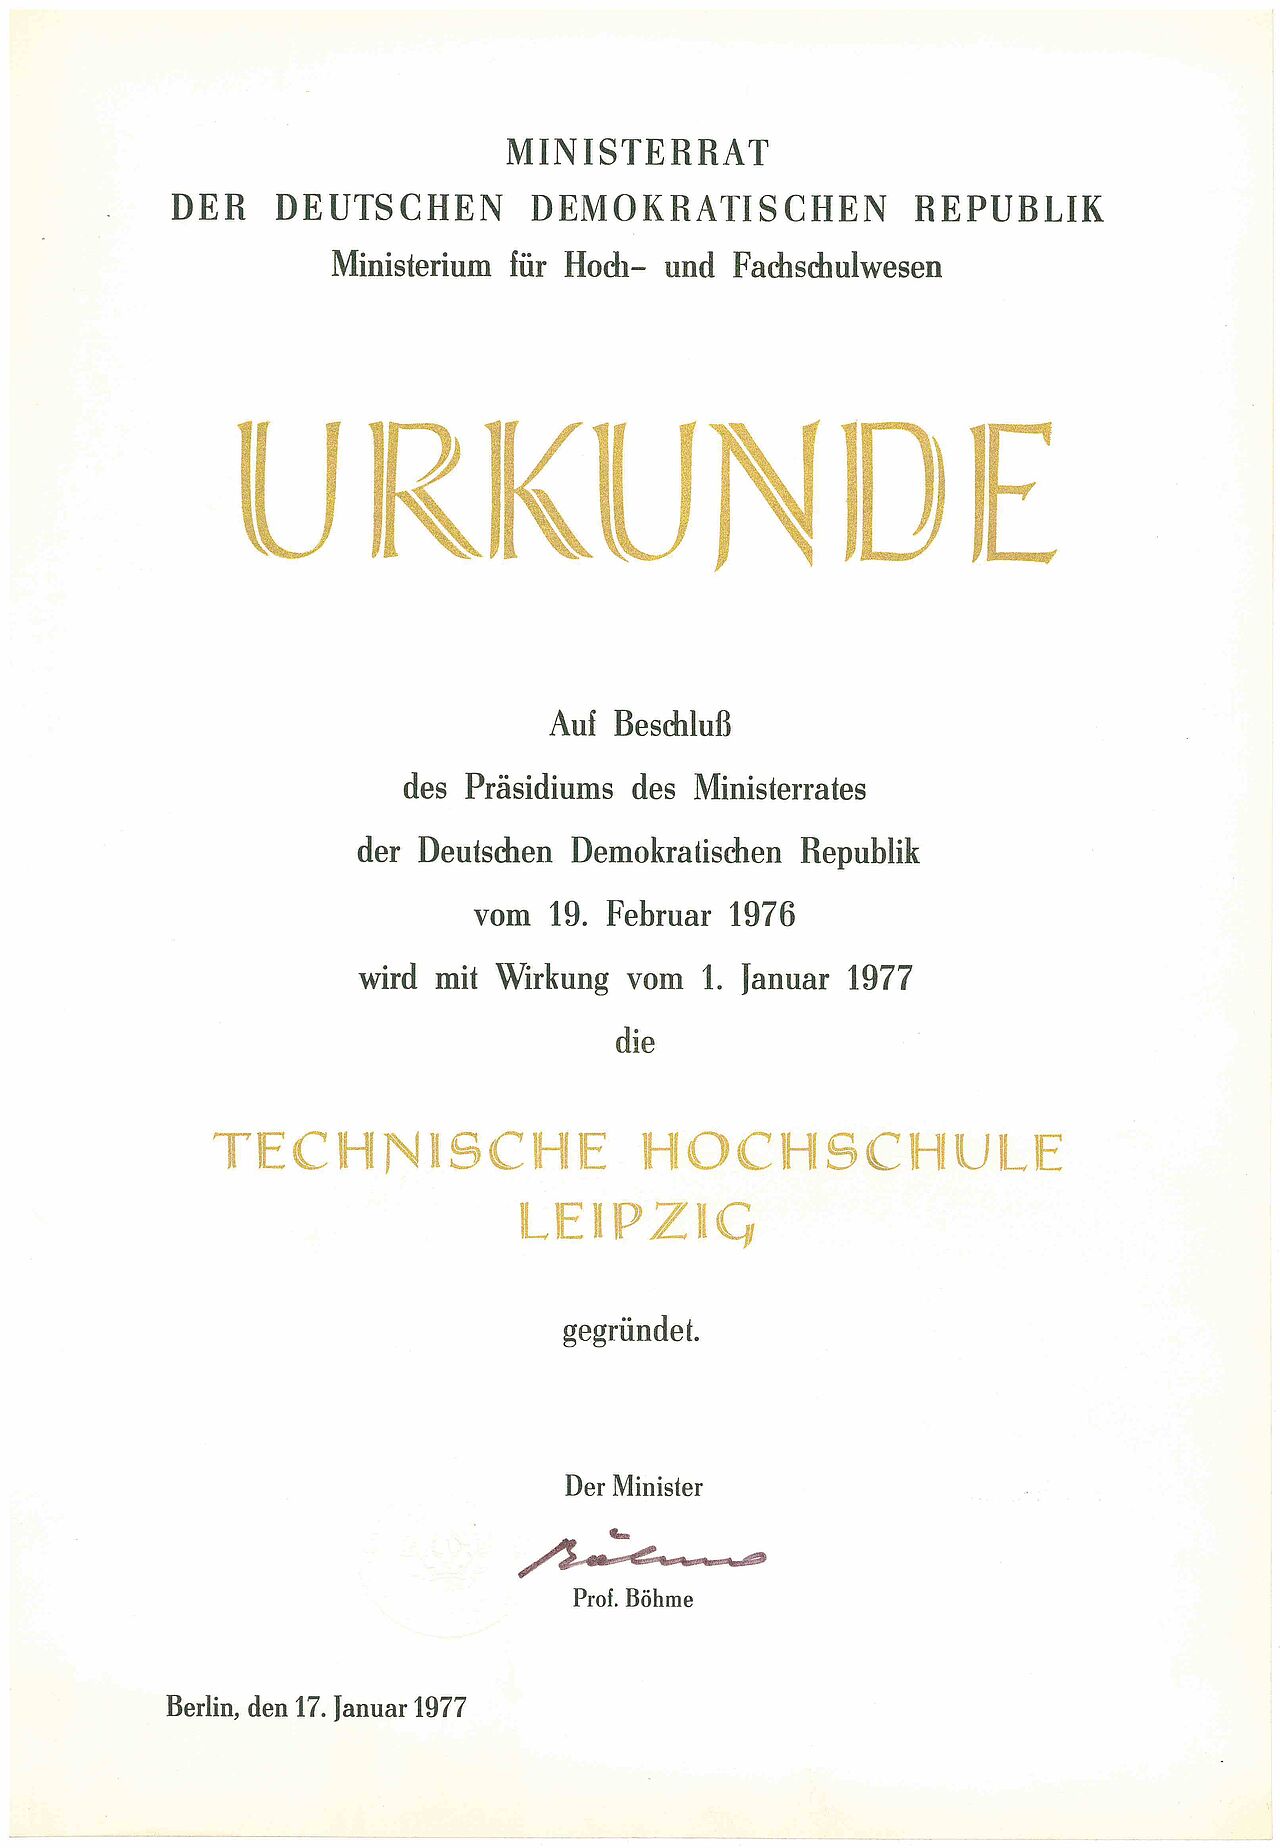 Abbildung der Gründungsurkunde der Technischen Hochschule Leipzig aus dem Jahr 1977